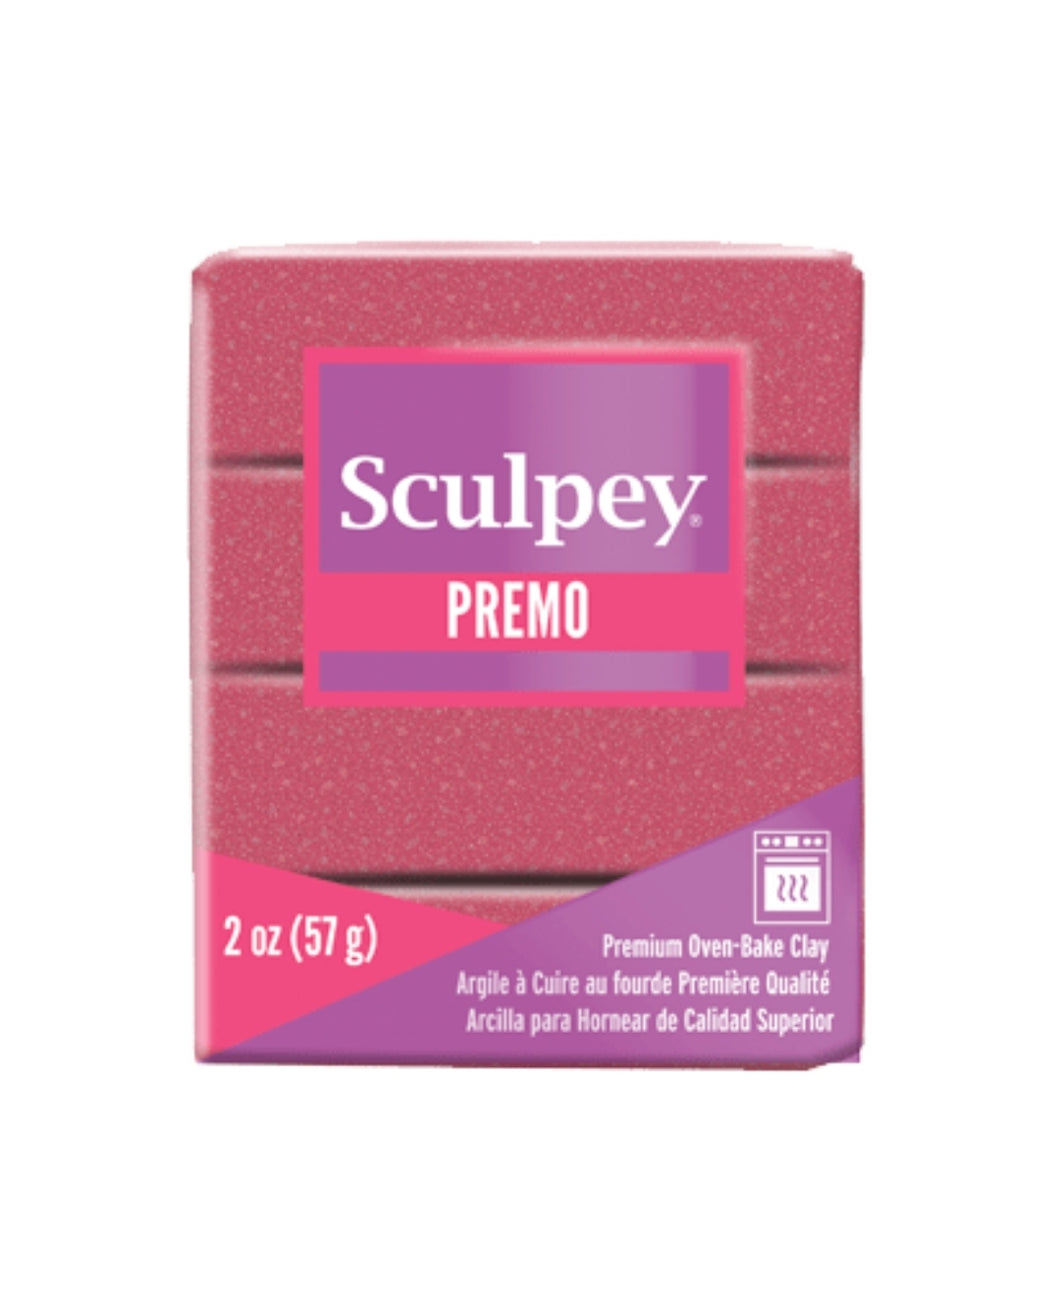 Premo! Sculpey Pearl / Glitter 2 oz - Oven Bake Clay